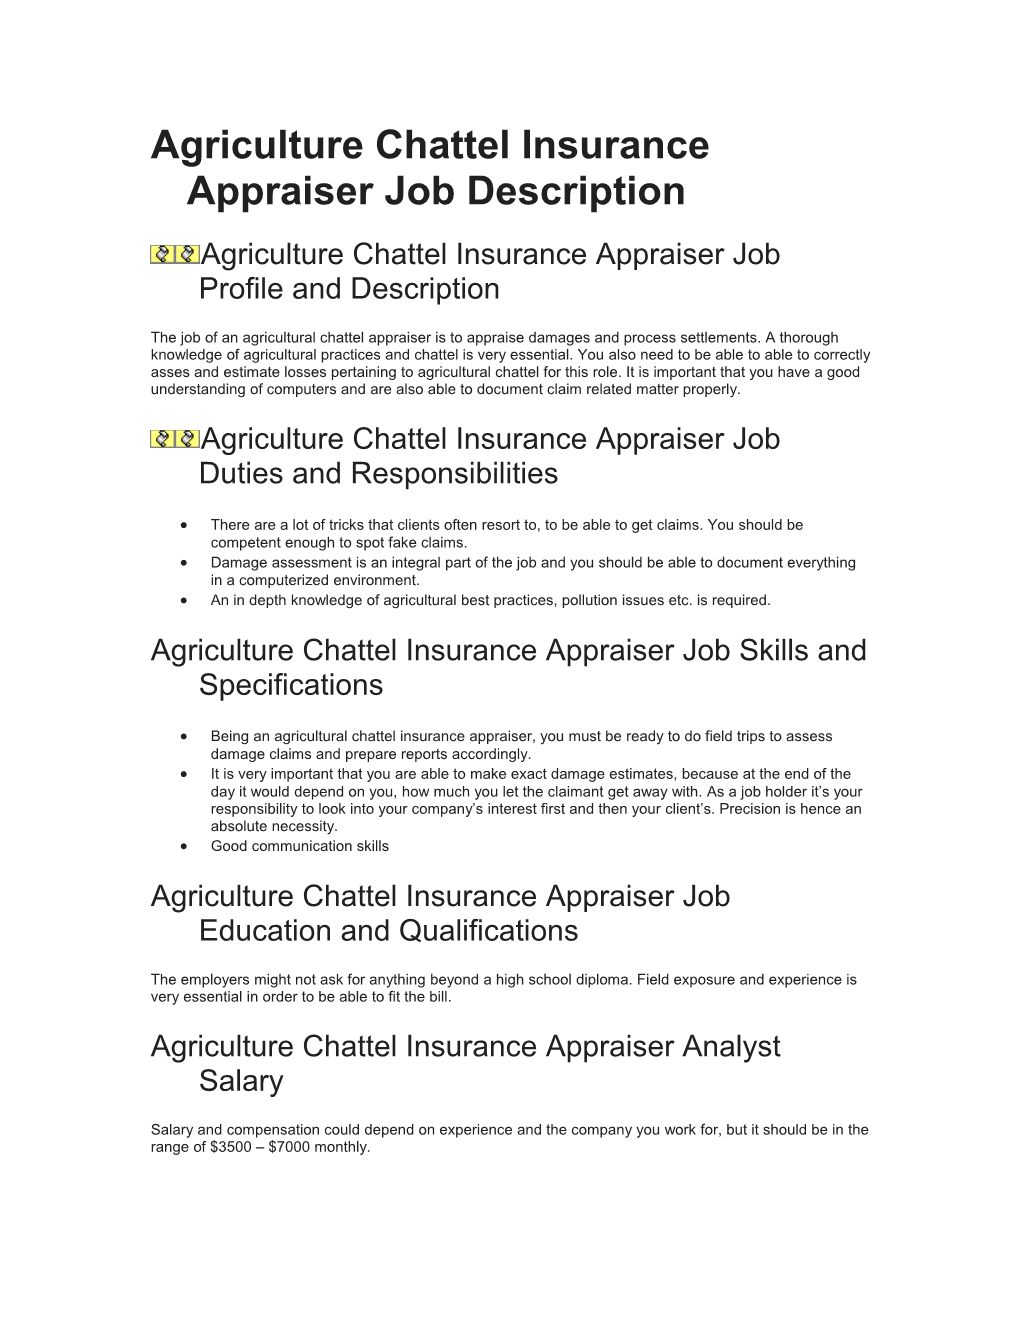 Agriculture Chattel Insurance Appraiser Job Description